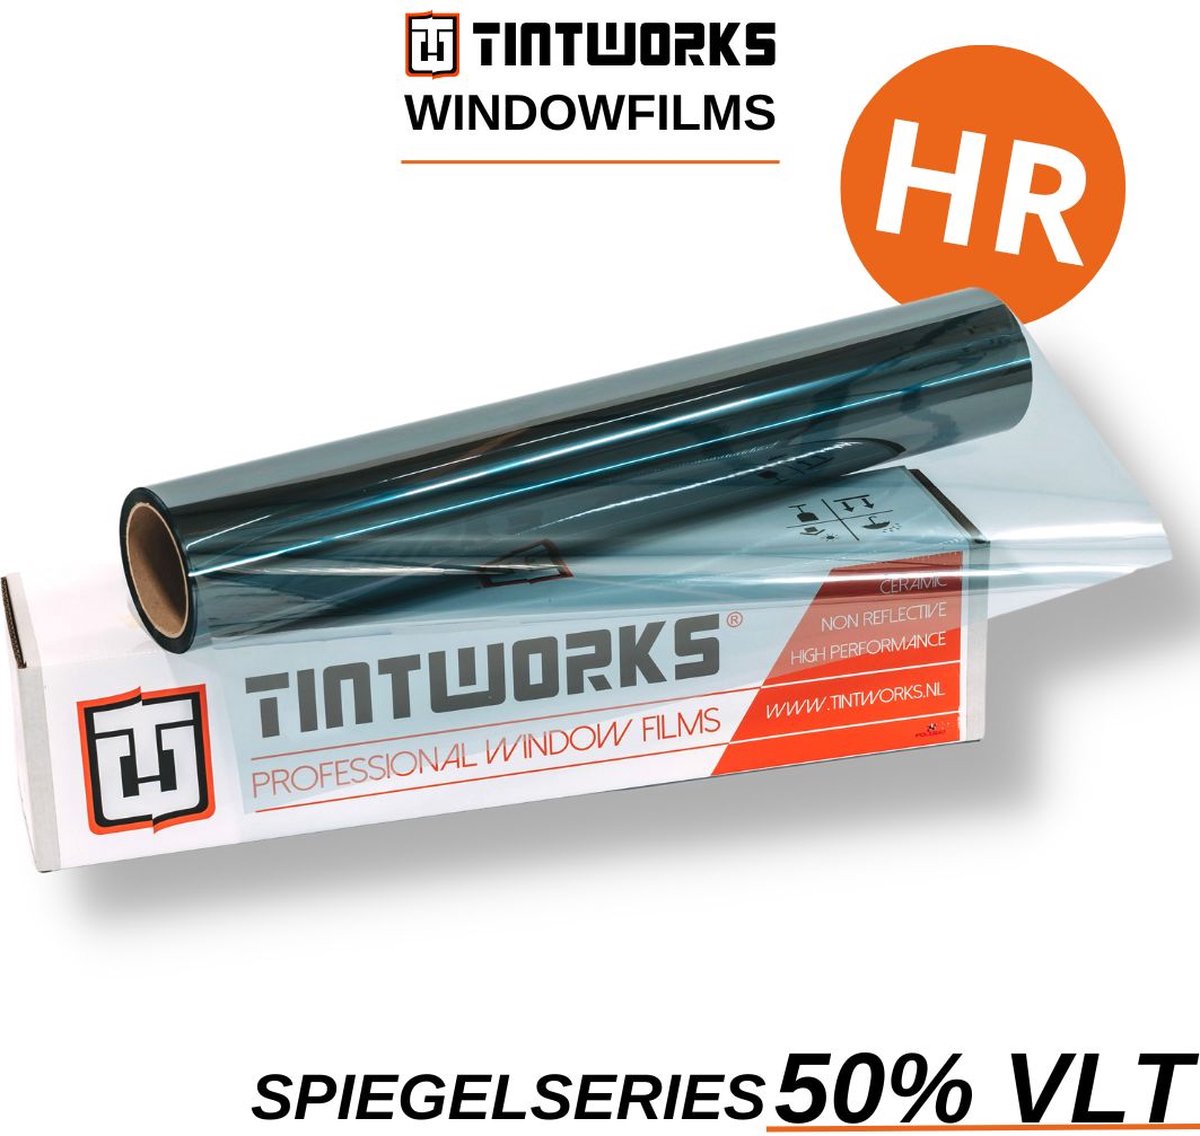 Tintworks Raamfolie spiegeleffect - spiegelfolie - anti inkijk 50% VLT - HR(+++) Glas - 300cm x 91cm - Zonwerend & isolerend - Professionele A-kwaliteit